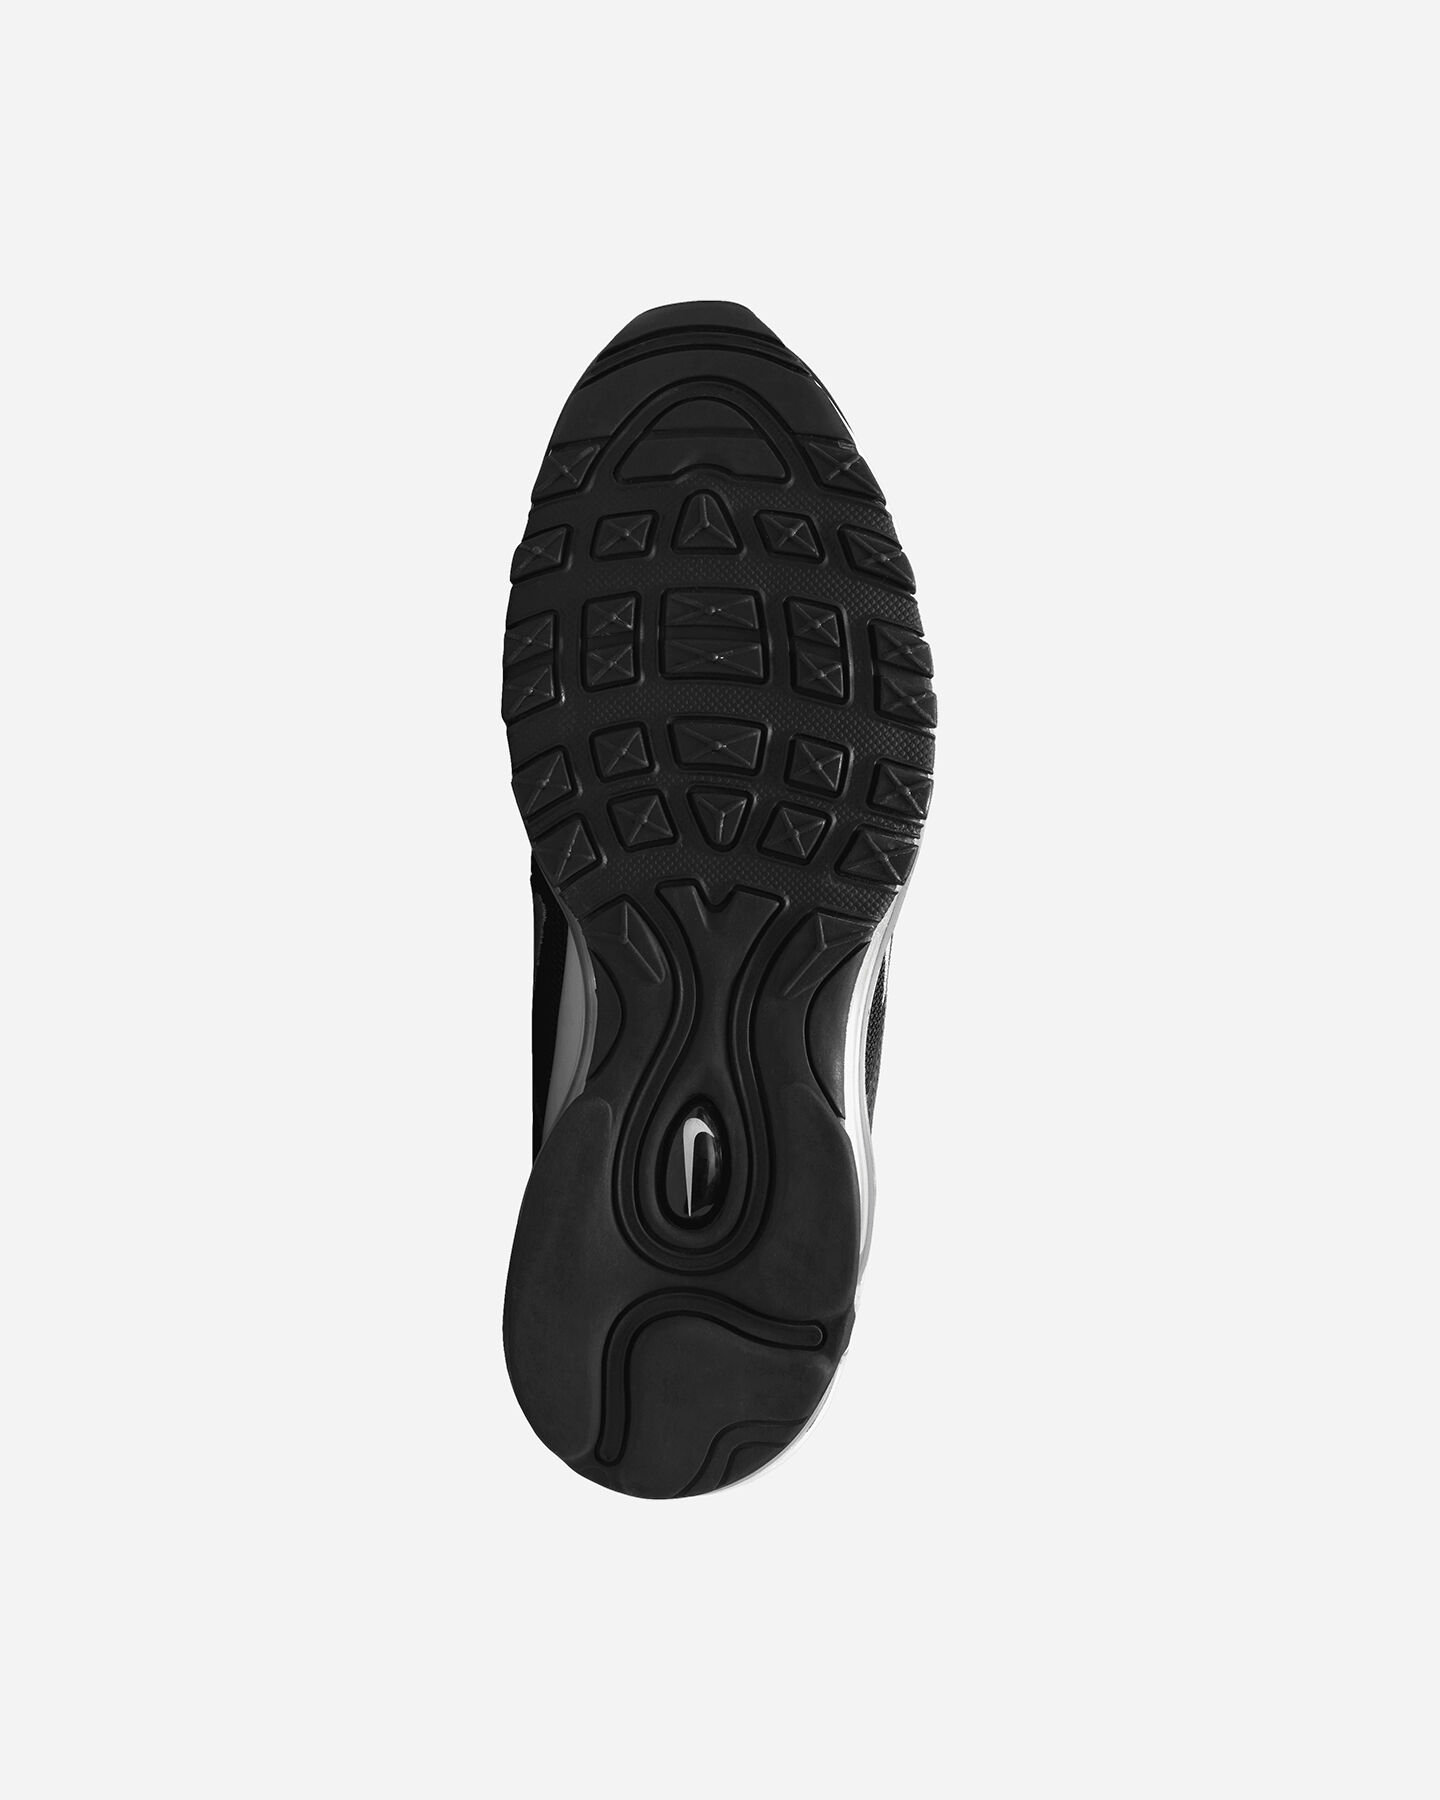  Scarpe sneakers NIKE AIR MAX 97 W S5502243|001|6.5 scatto 1